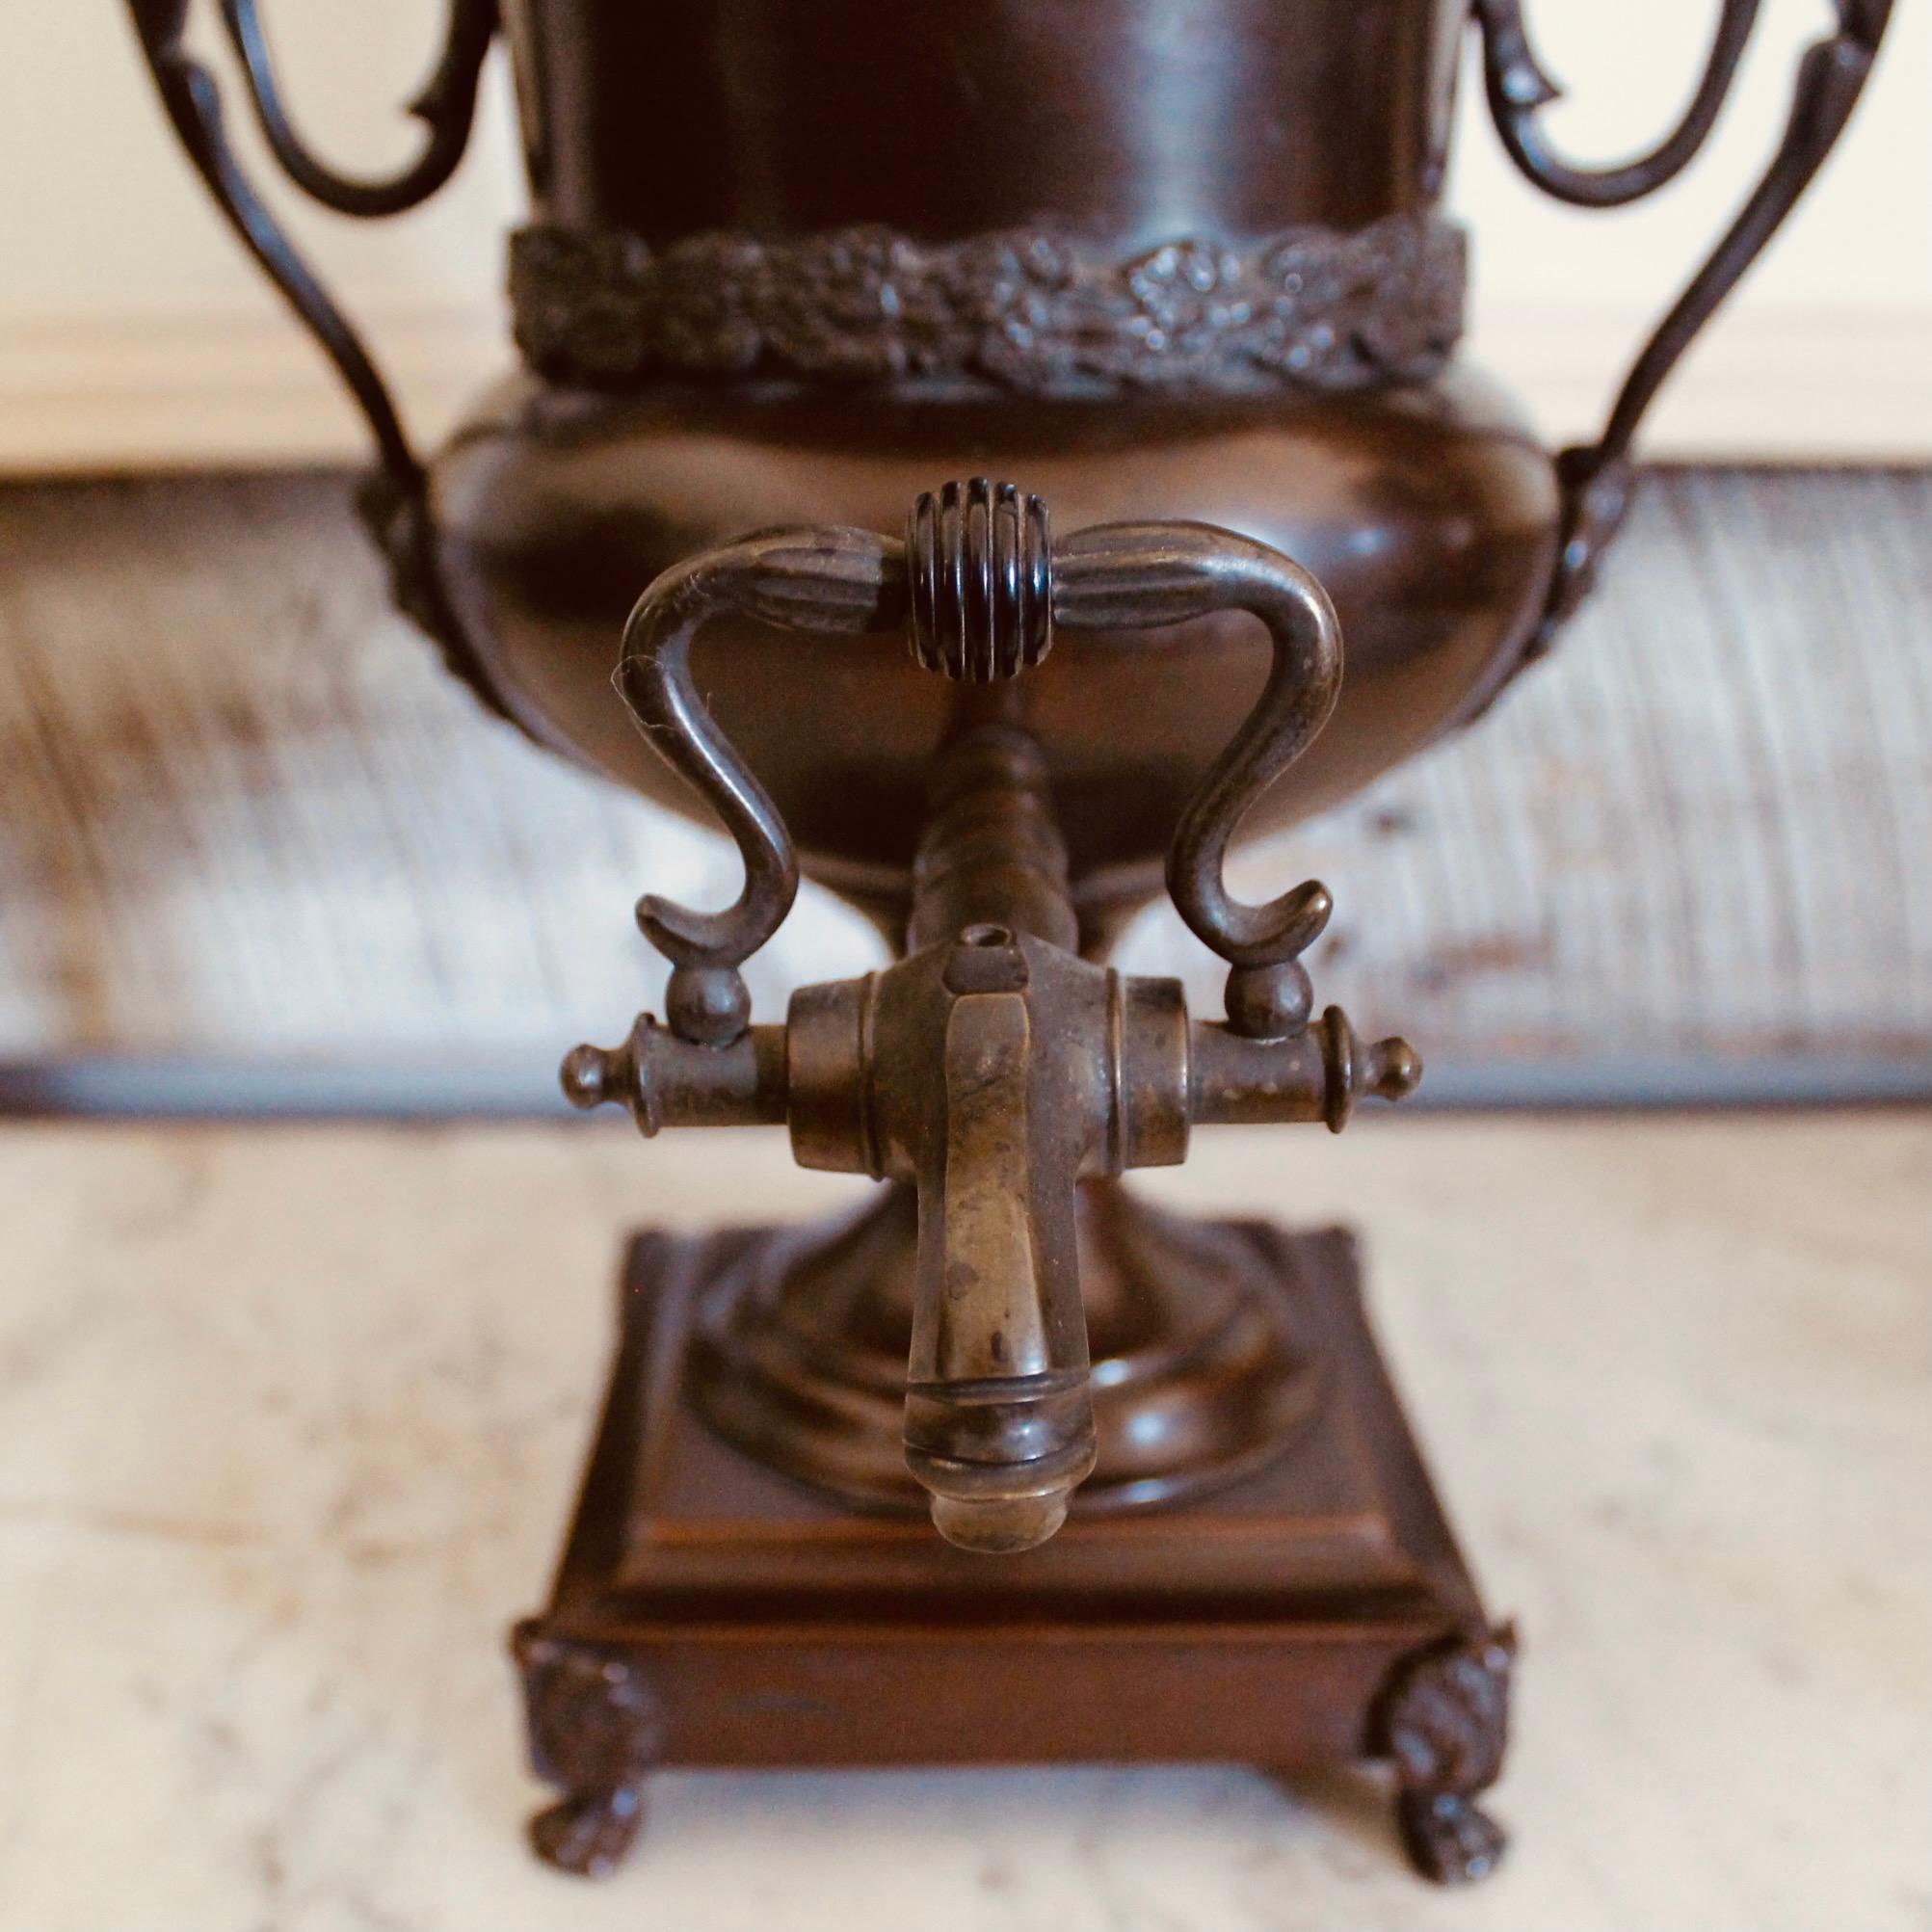 Une très belle et très décorative jarre à eau chaude sur pied en cuivre patiné foncé, datant d'environ 1810. 1810 en cuivre patiné foncé, avec de merveilleux détails sculpturaux à la manière des céramiques de Wedgwood de la même période. Un putto